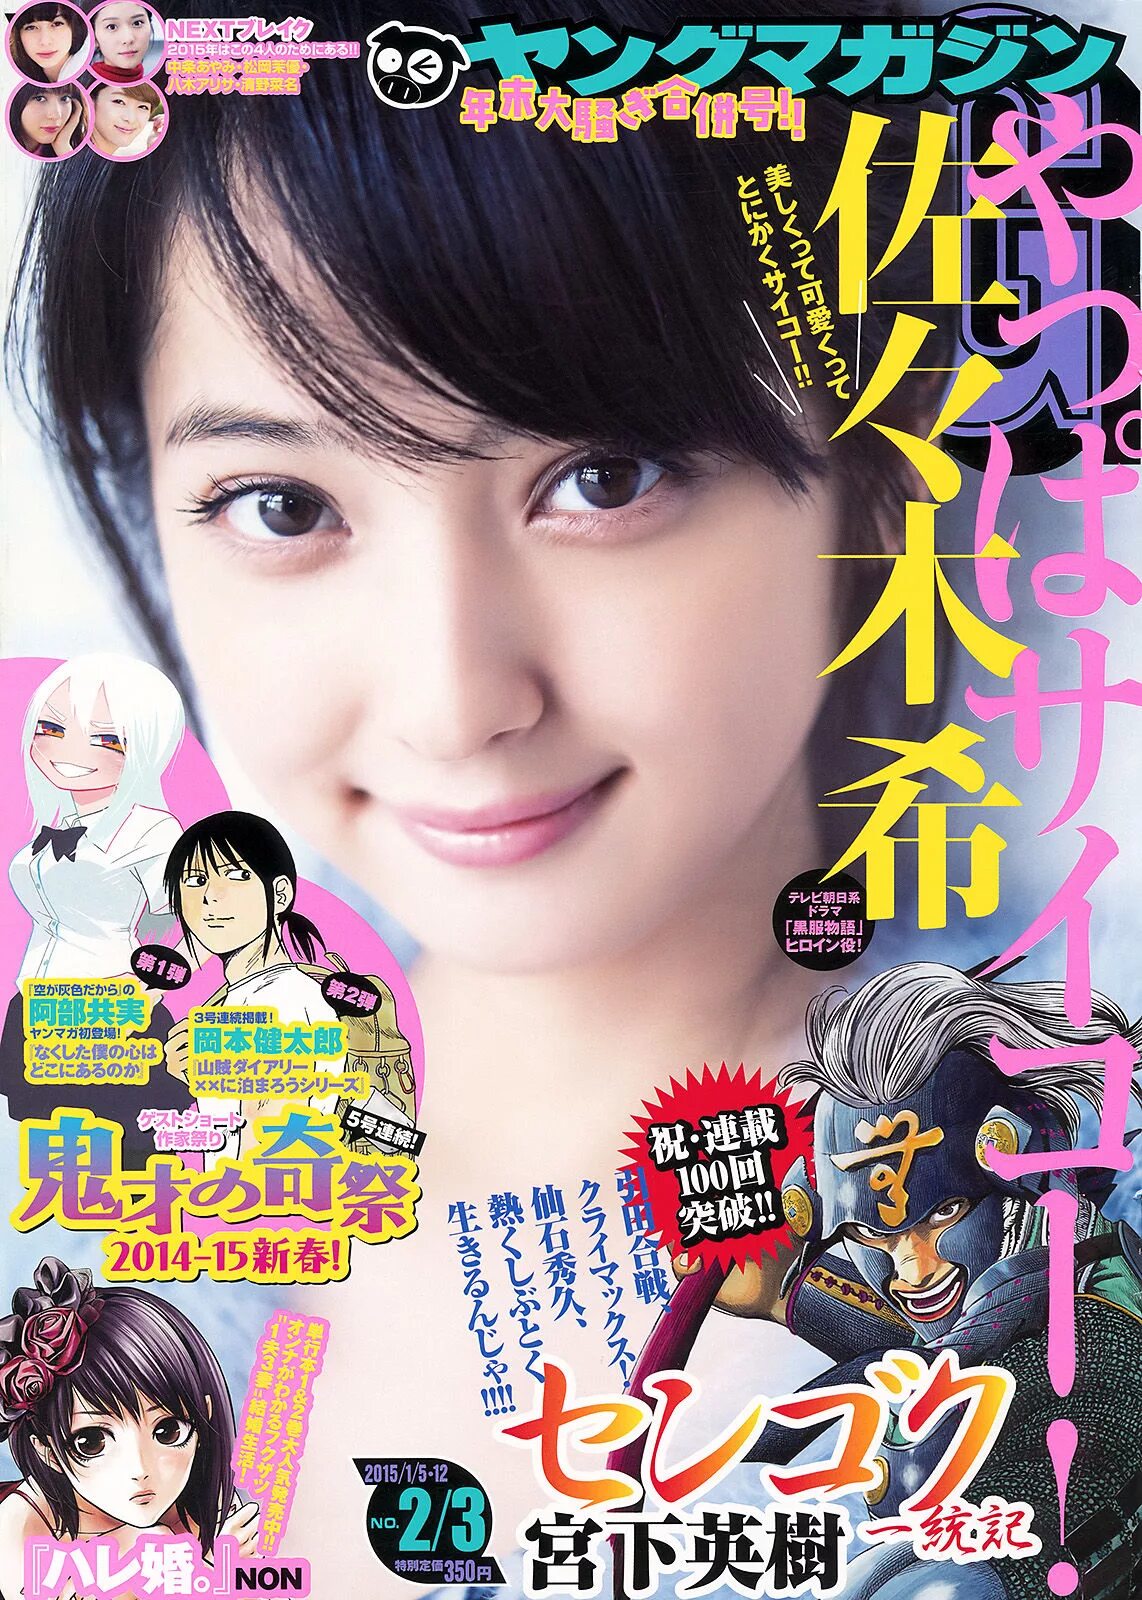 Young magazine. Сасаки Нозоми журналы. Журнал ‐ 杂志.